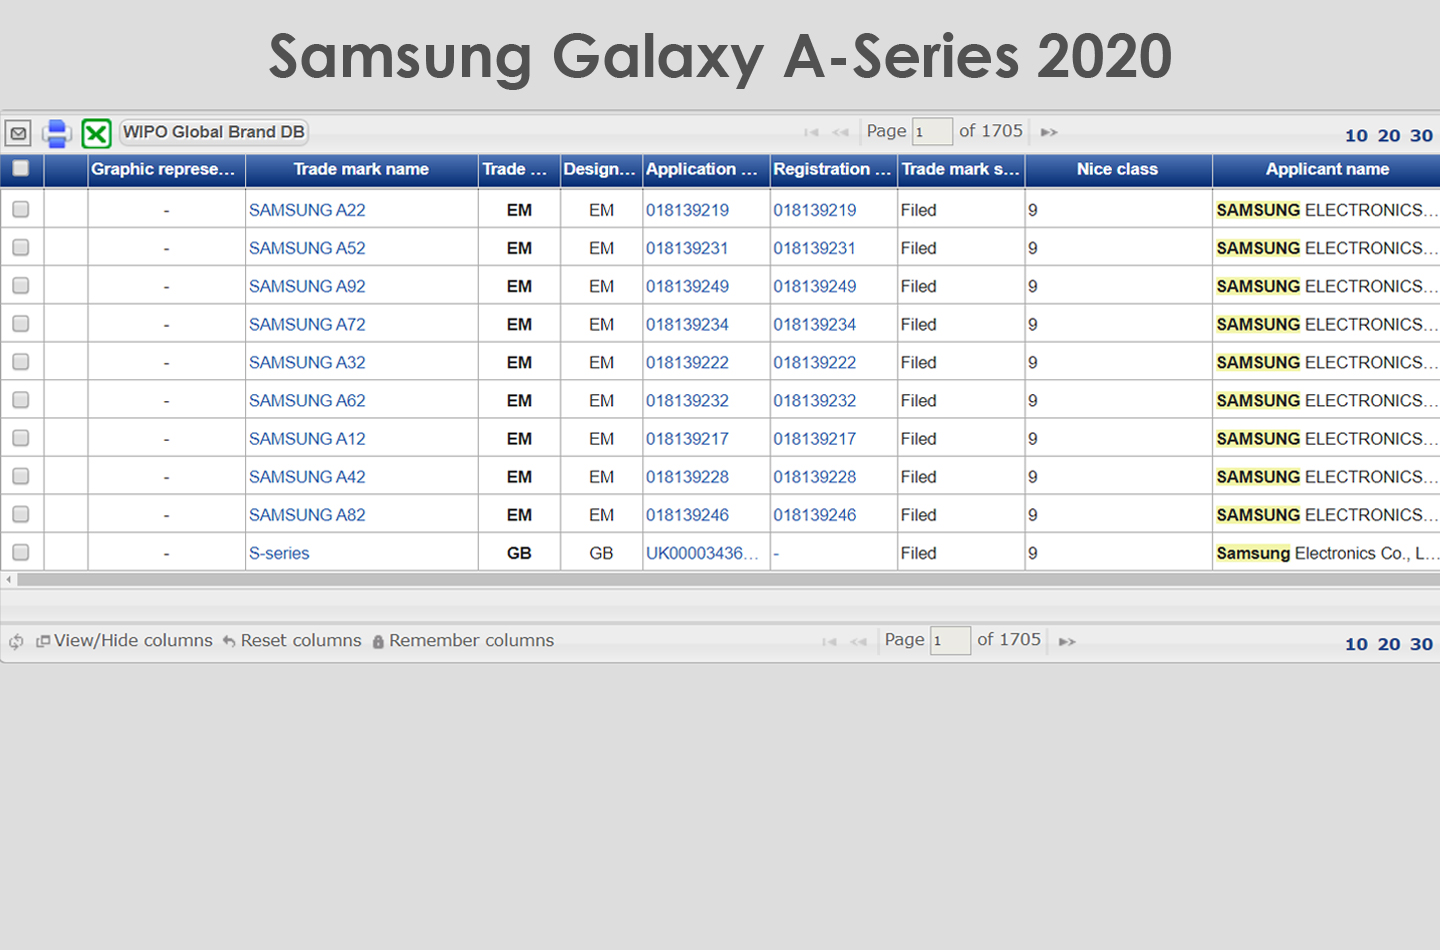 Samsung Galaxy A Series 2020